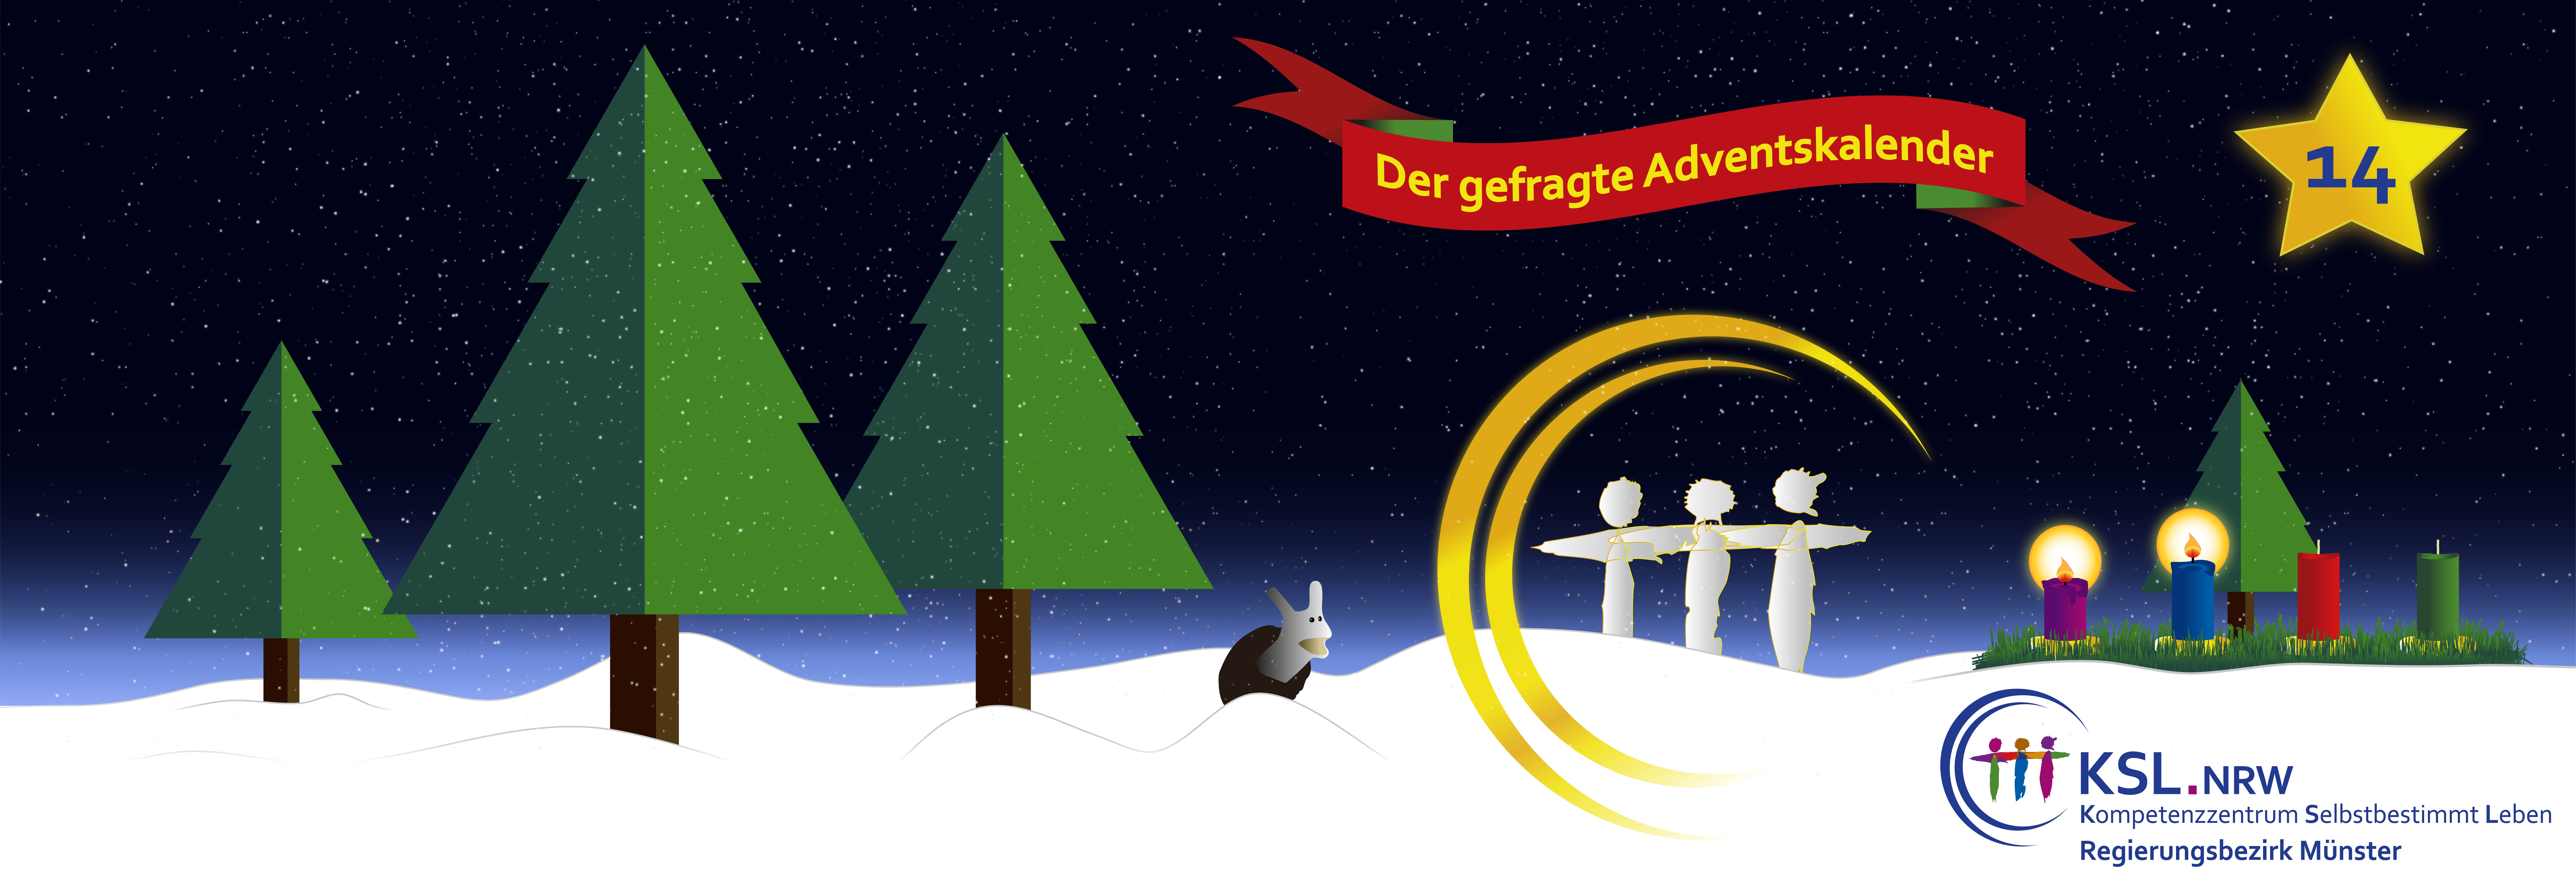 Der gefragte Adventskalender - KSL Münster - weihnachtlicher Hintergrund - vier Tannenbäume - ein Stern mit der Nummer 14 - ein Adventskranz mit vier Kerzen